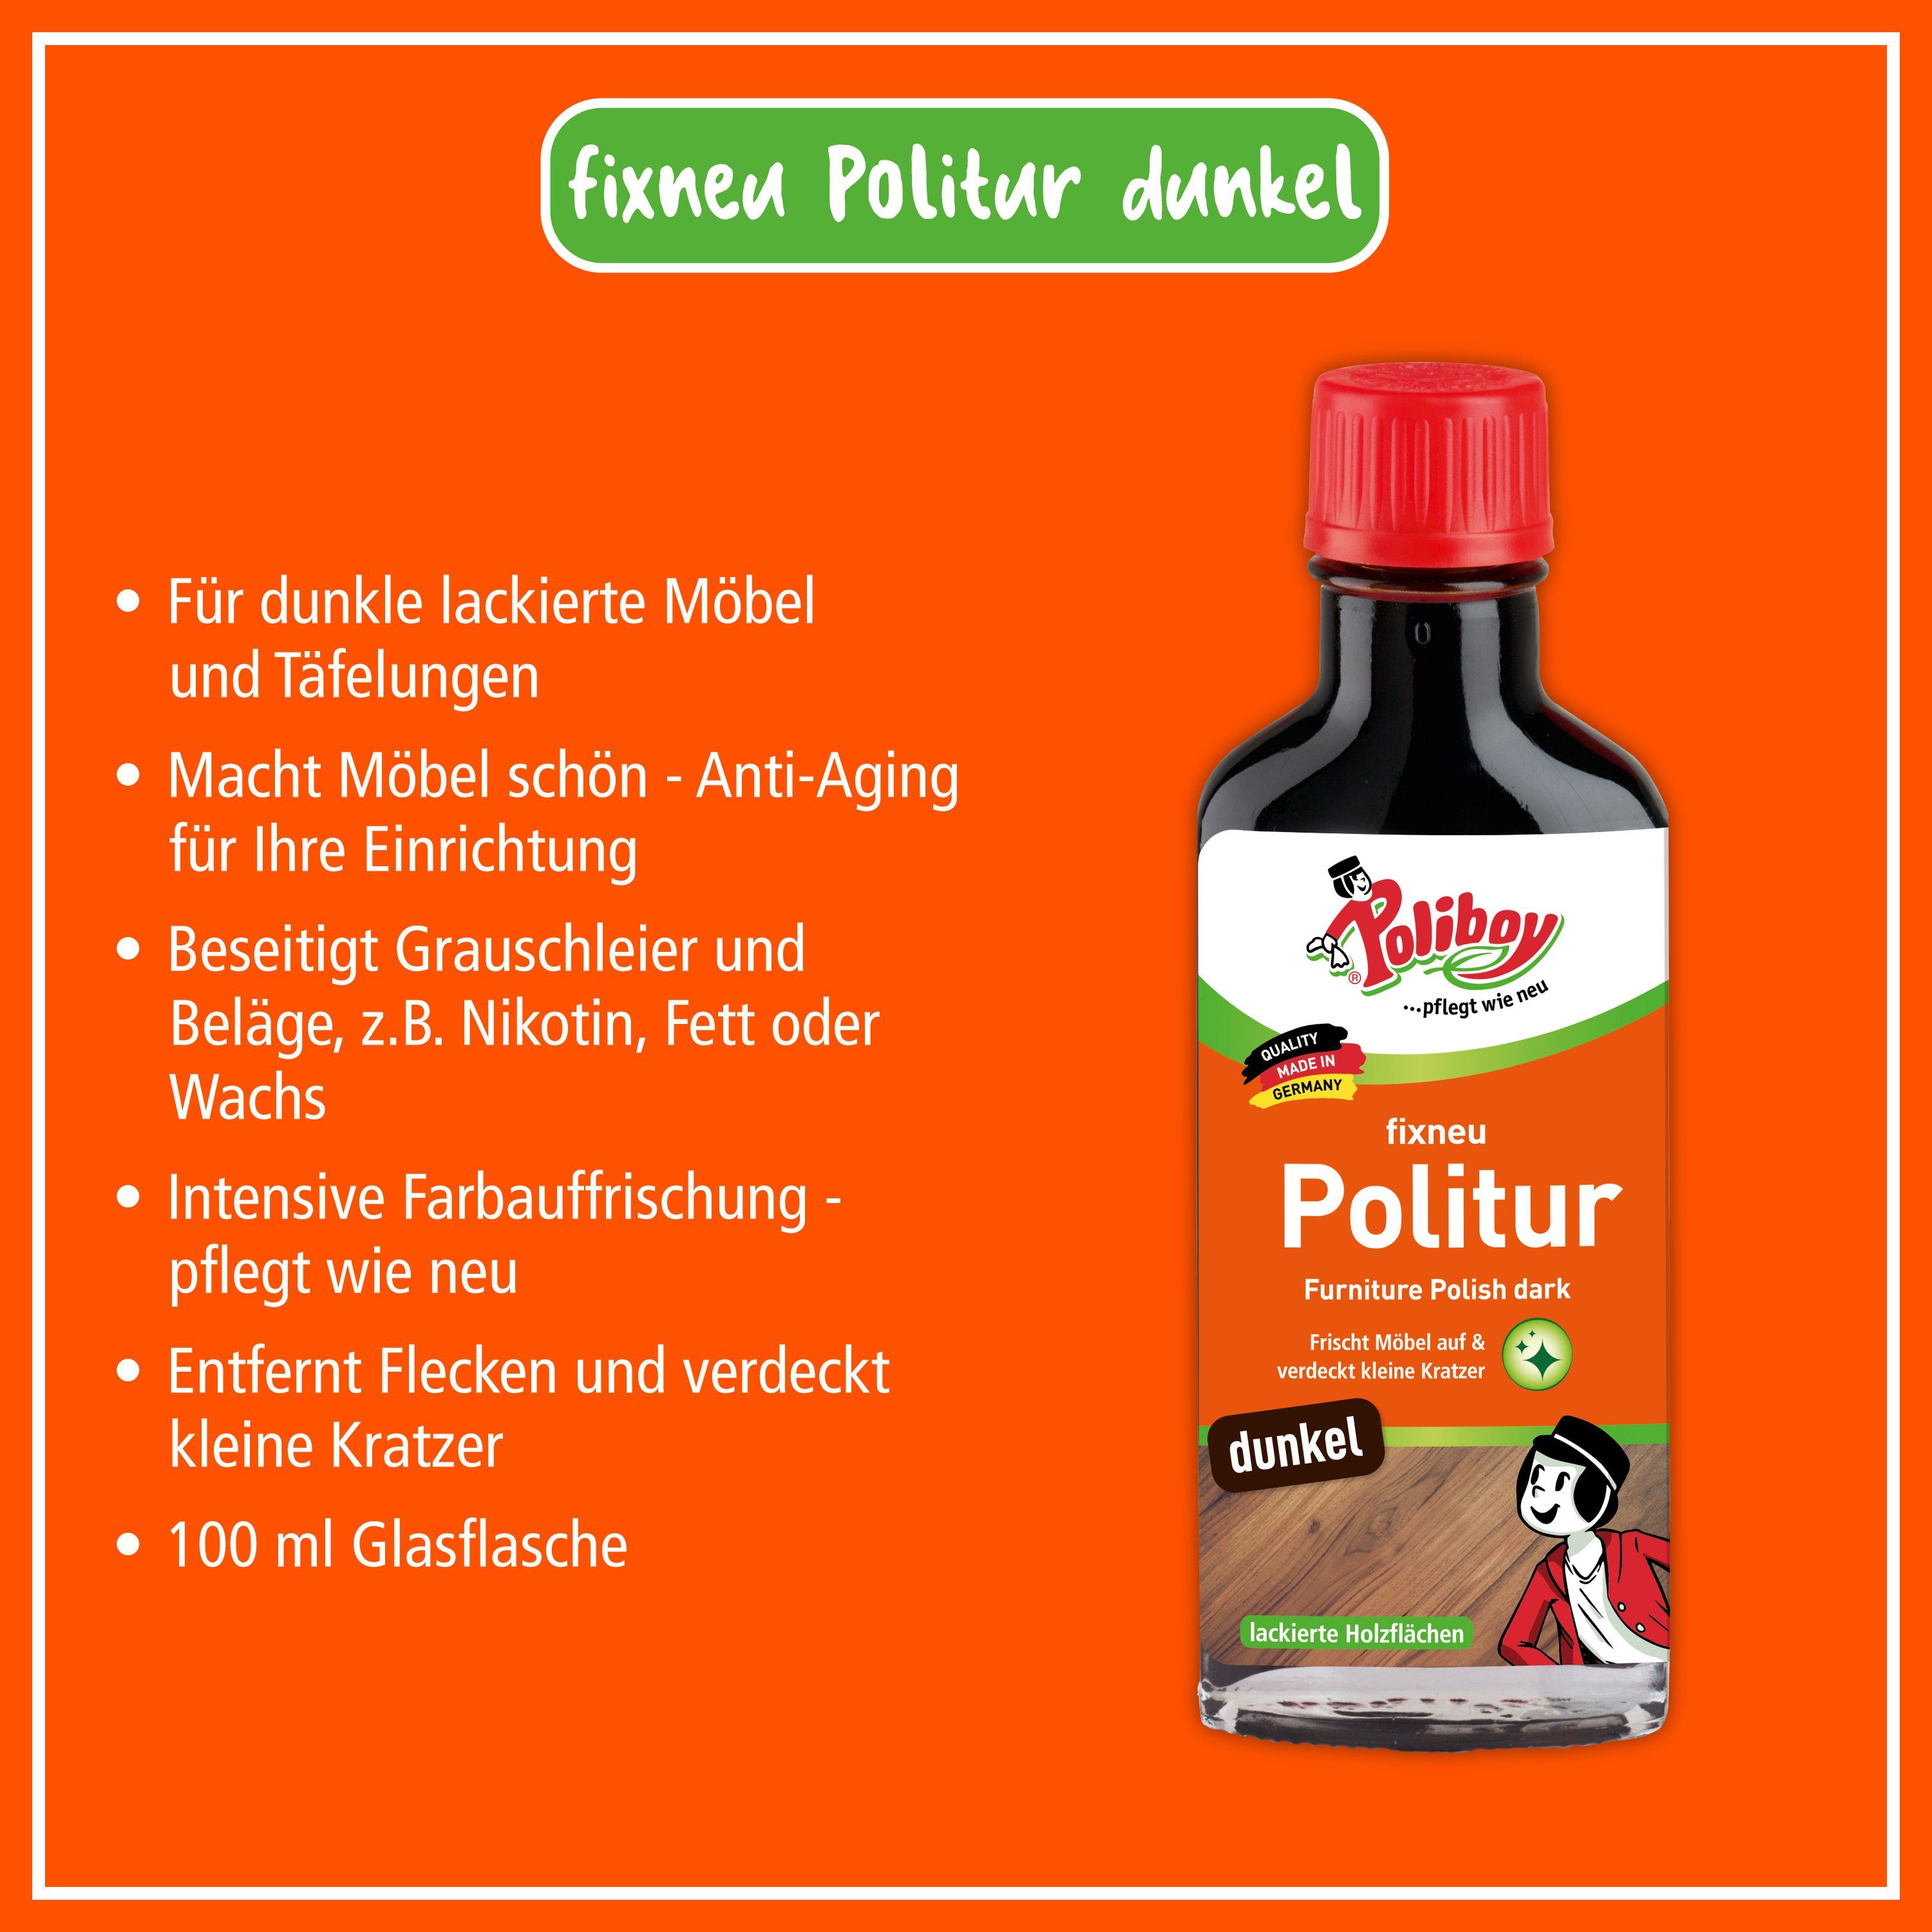 Made poliboy - Möbelreiniger - - ml Germany) (für in dunkel Fixneu dunkle Möbelpolitur 2x100 Oberflächen